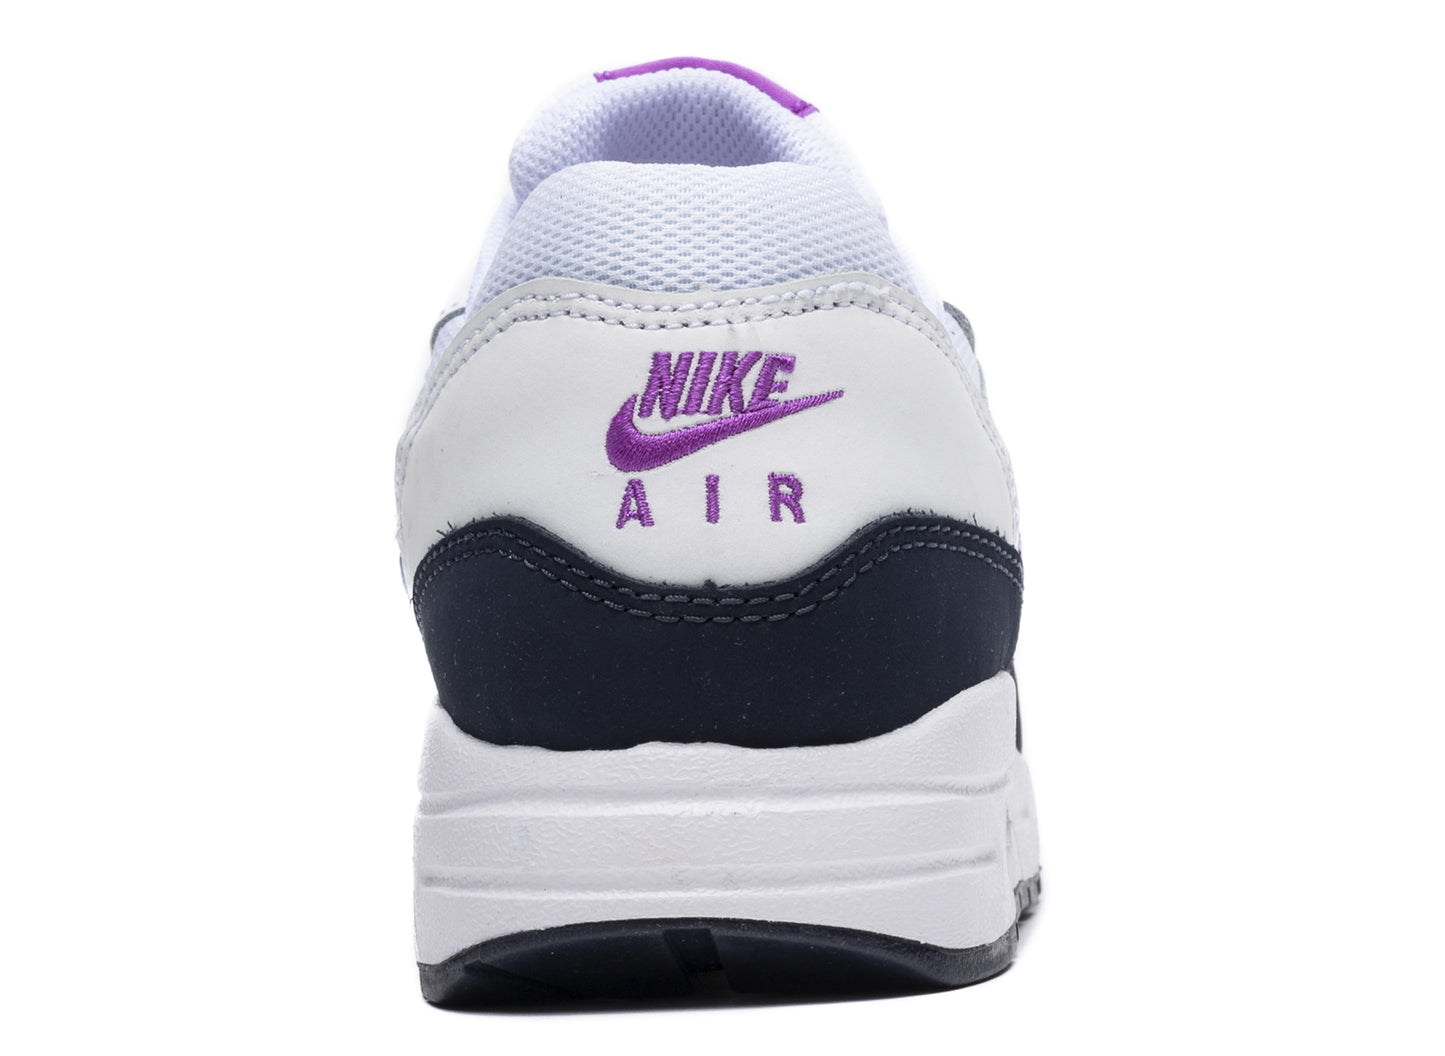 GS Nike Air Max 1 BG